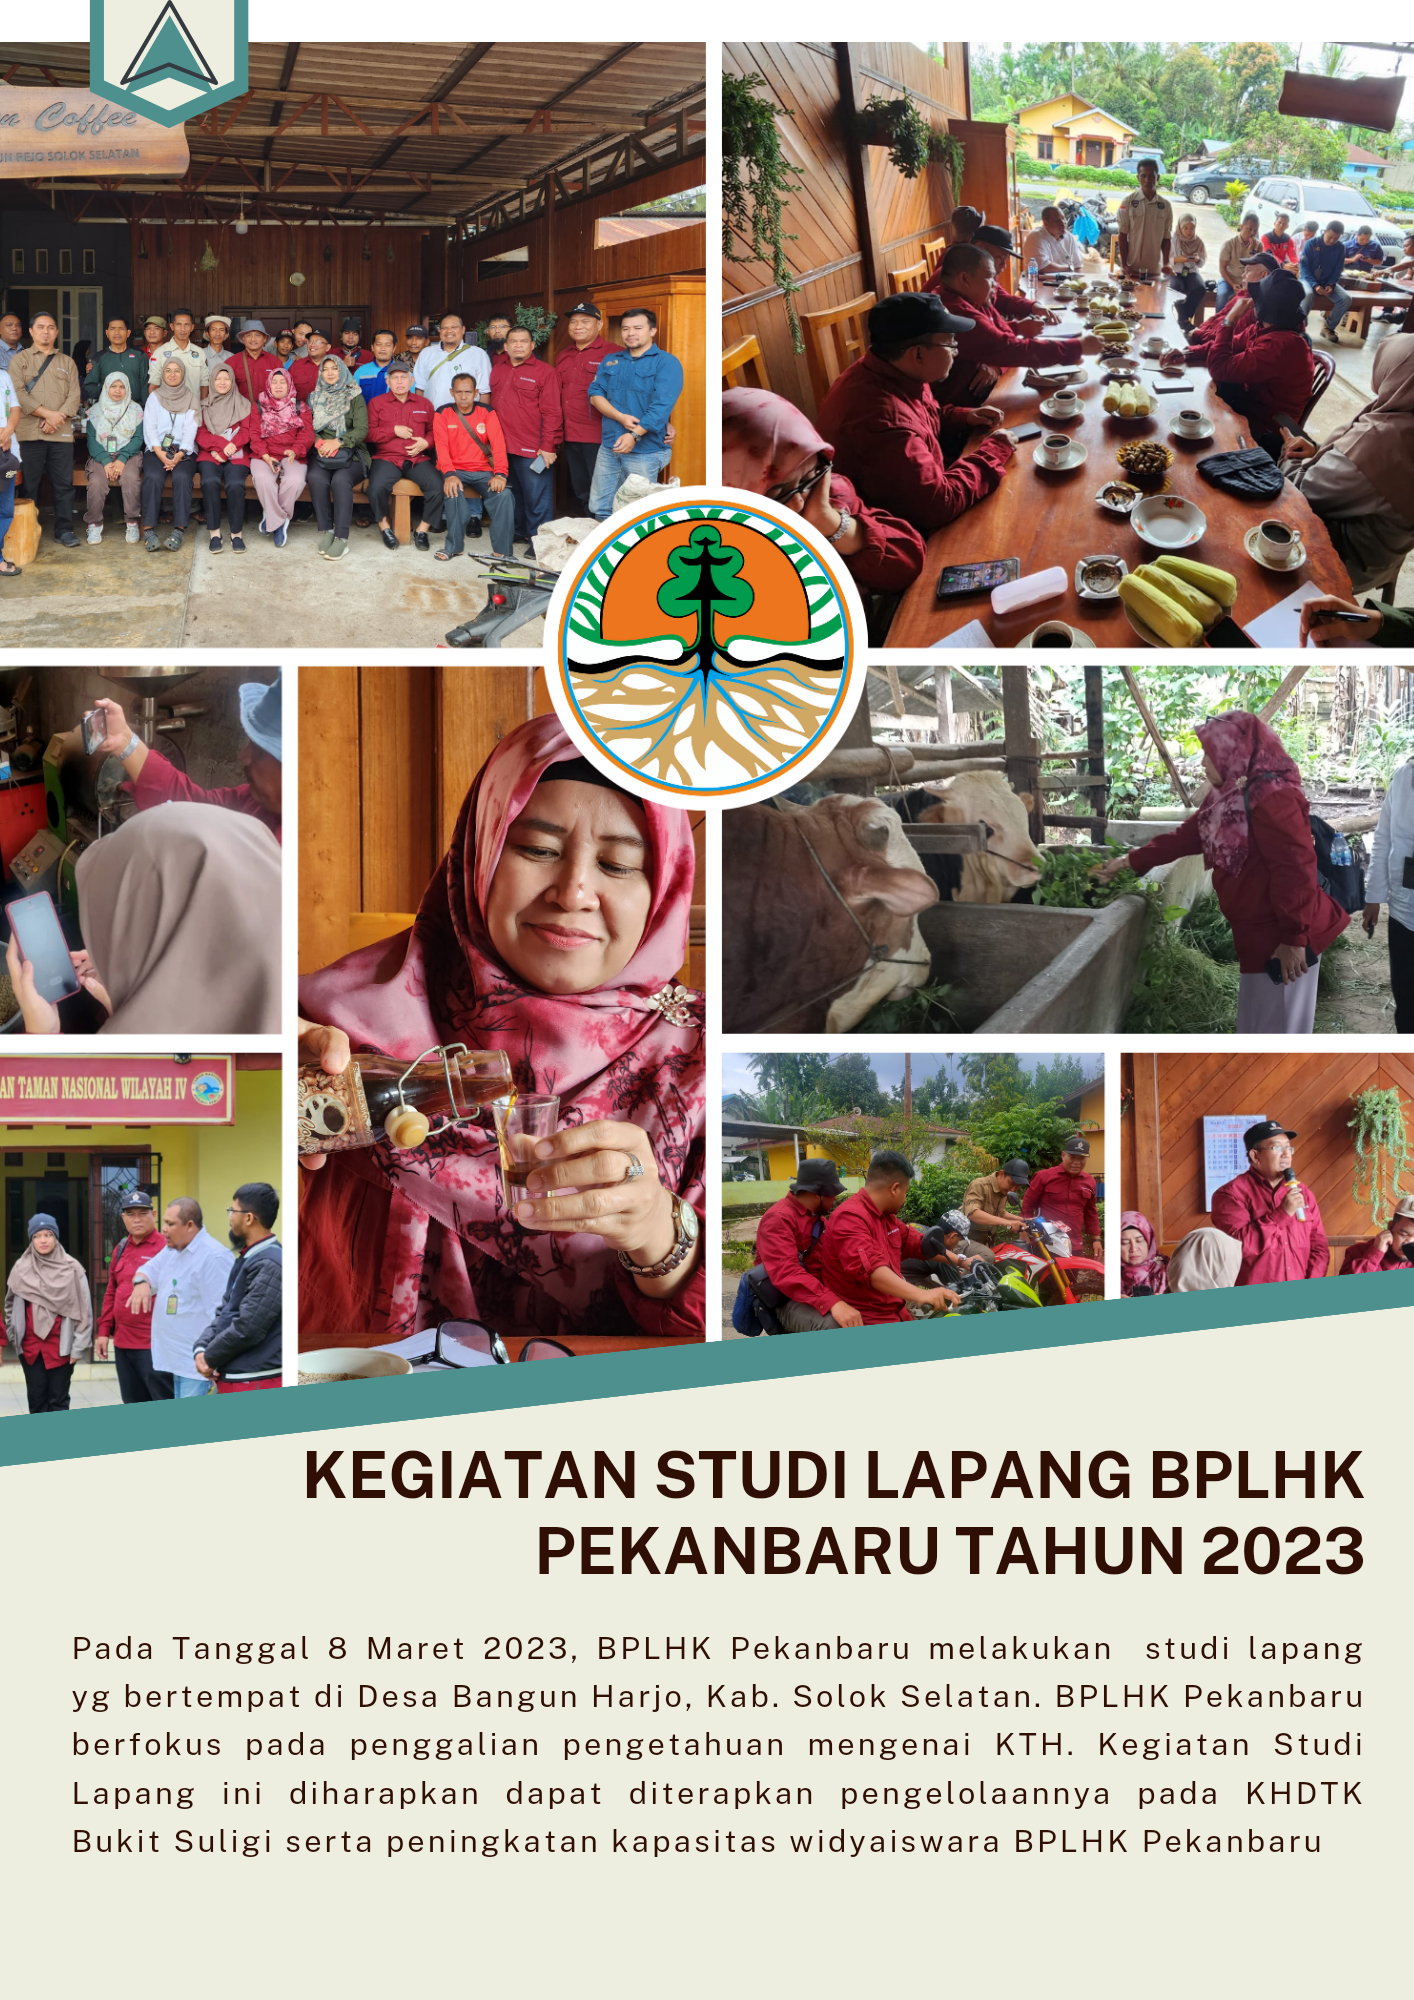 Kegiatan Studi Lapang BPLHK Pekanbaru yg bertempat di Desa Bangun Harjo, Kabupaten Solok Selatan Tahun 2023